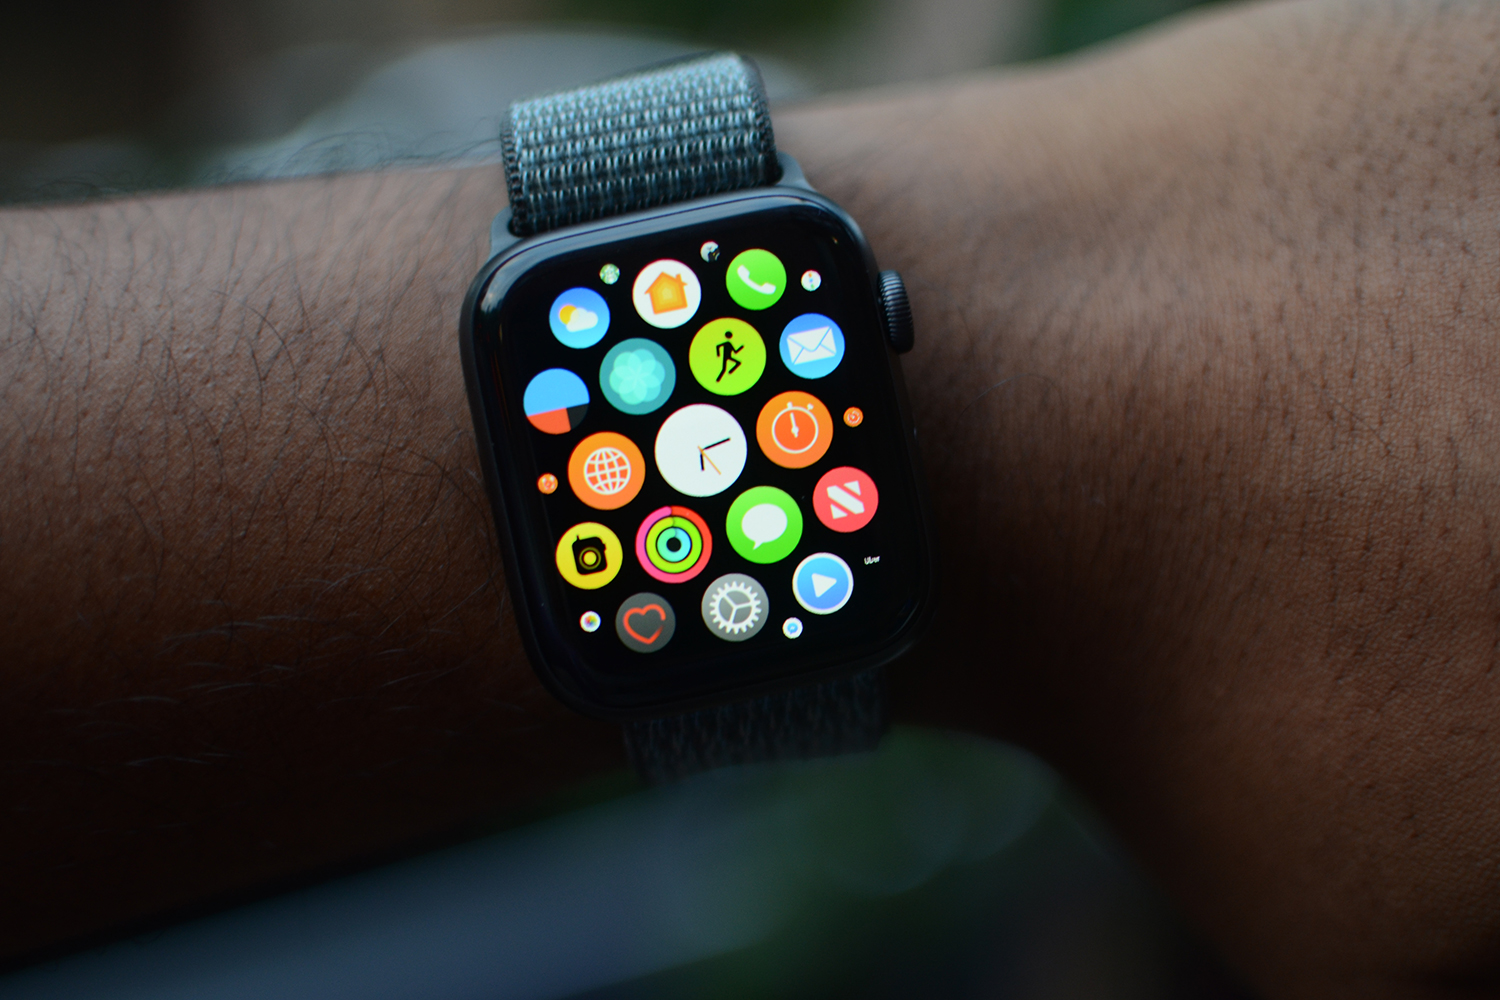 Apple Watch Series 4 deal: Get the best smartwatch at an